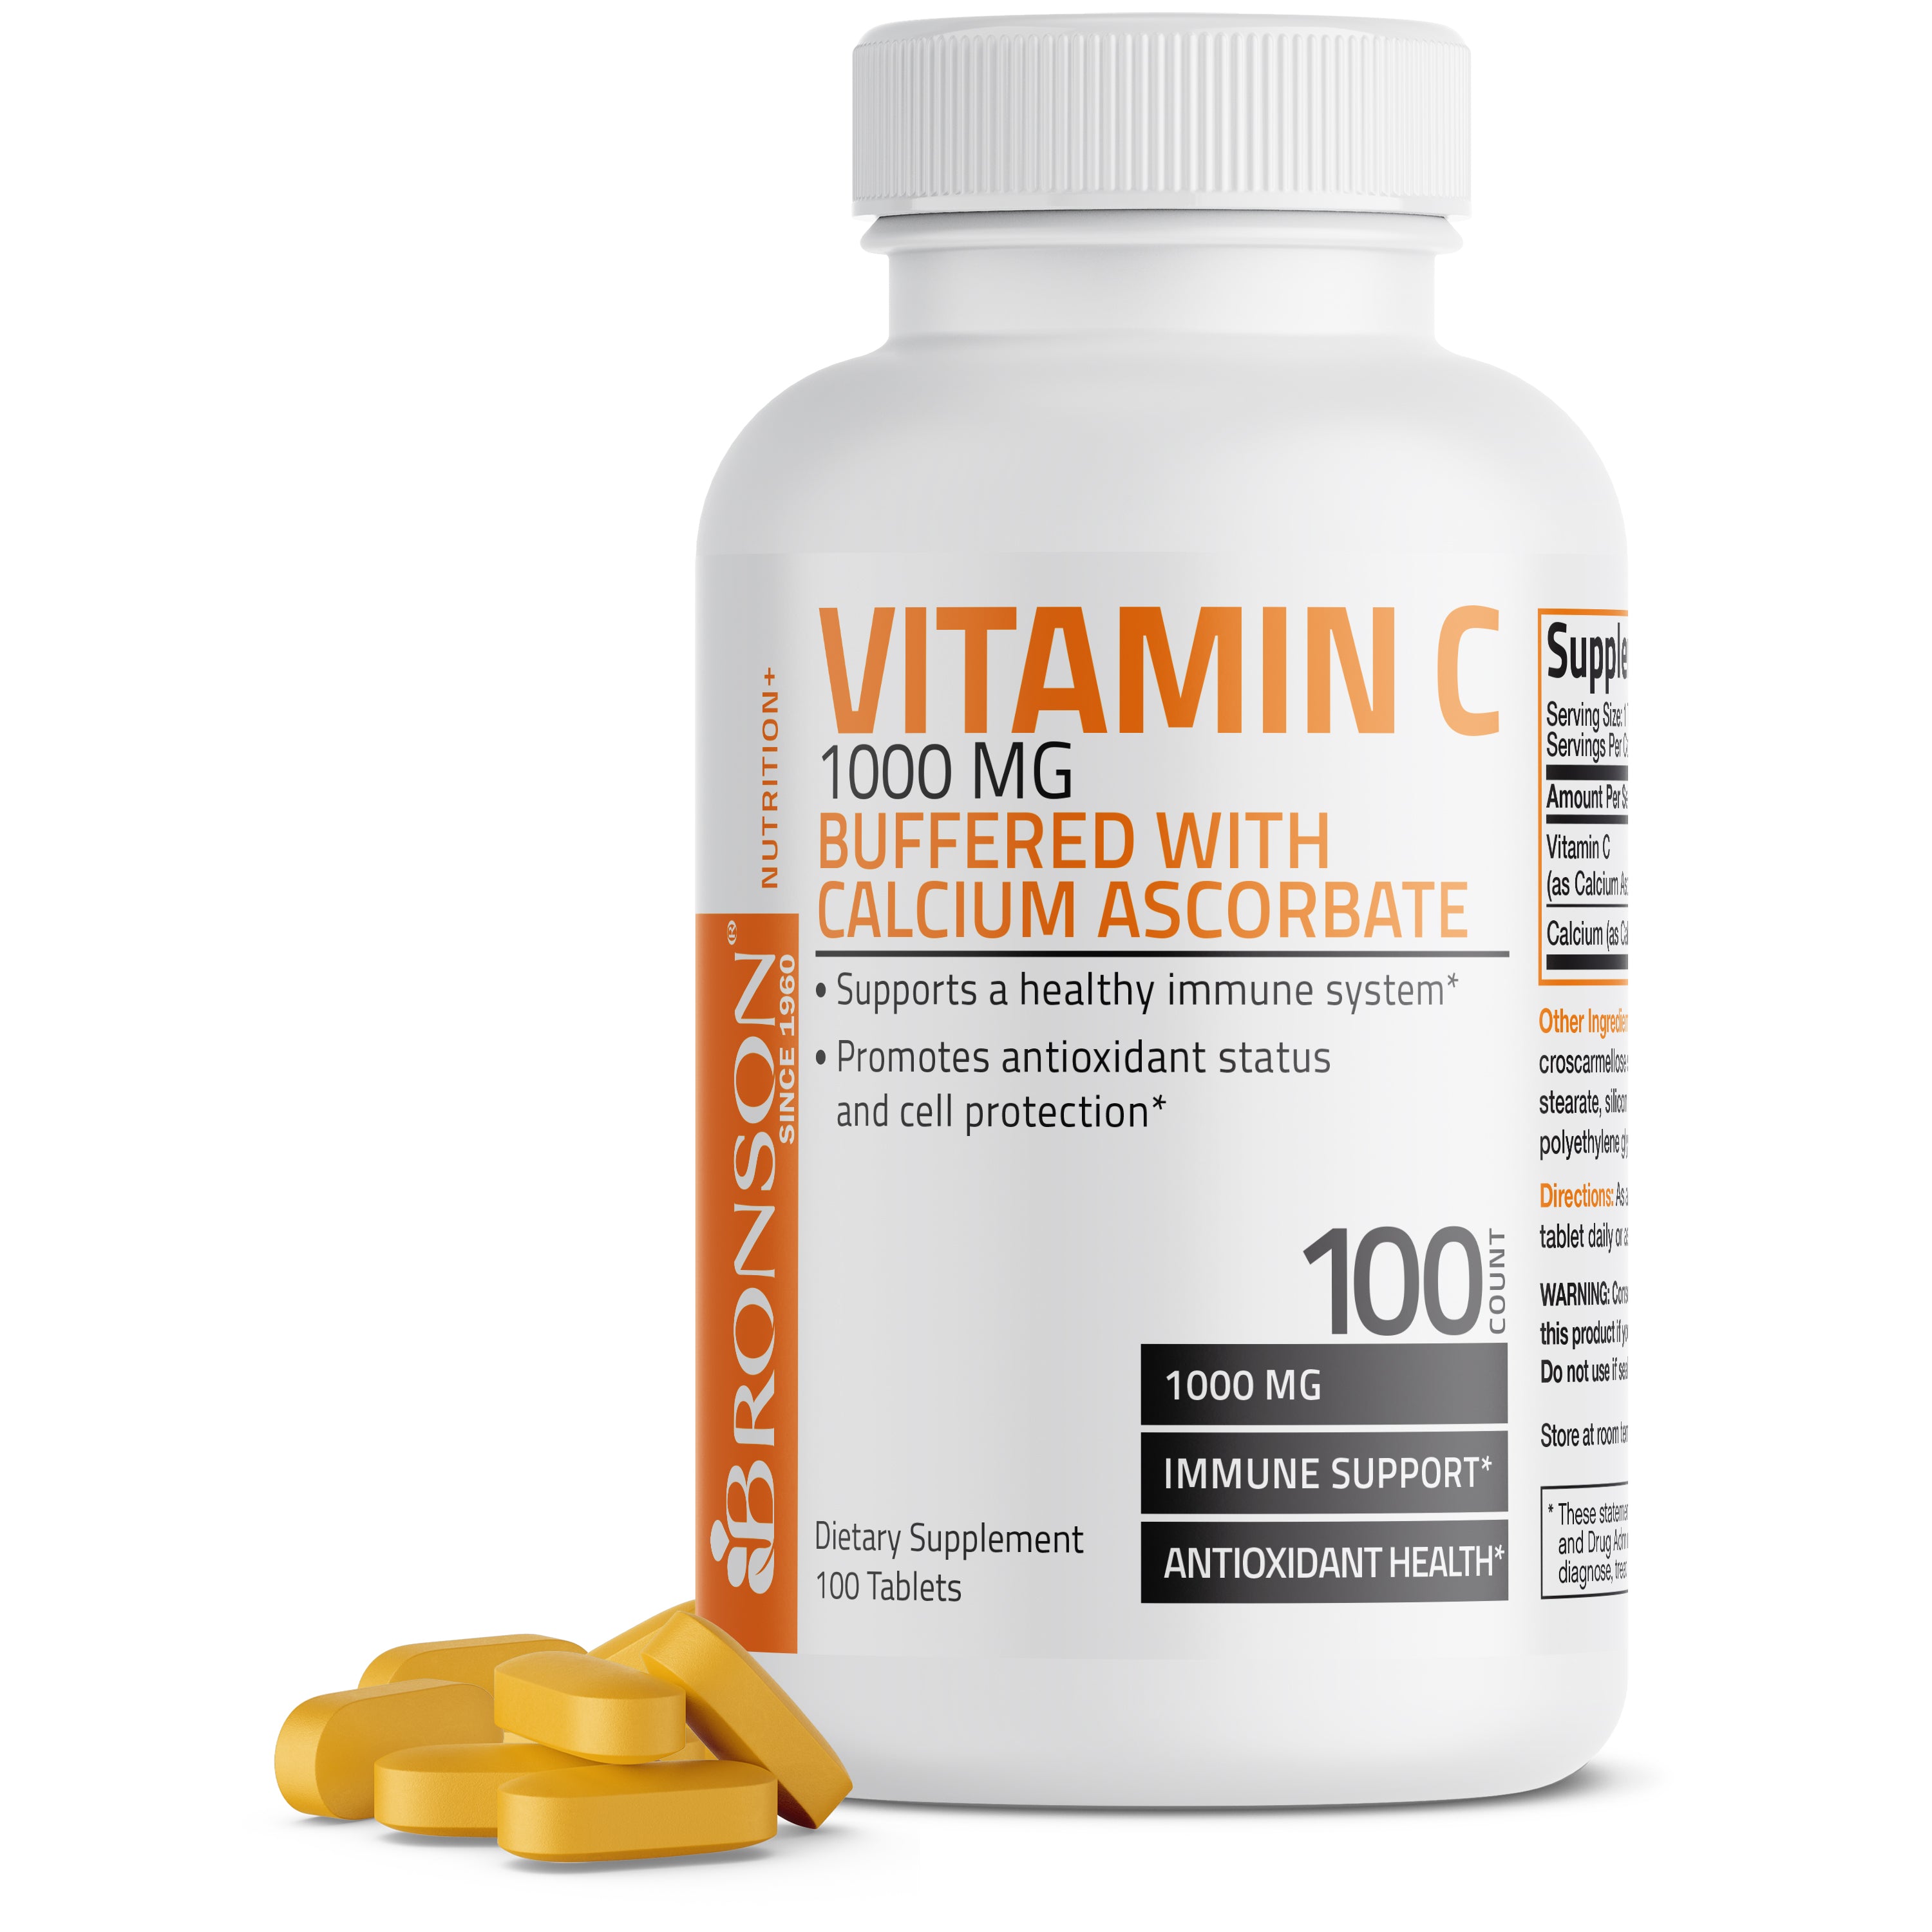 Buffered Vitamin C Calcium Ascorbate - 1,000 mg view 7 of 6